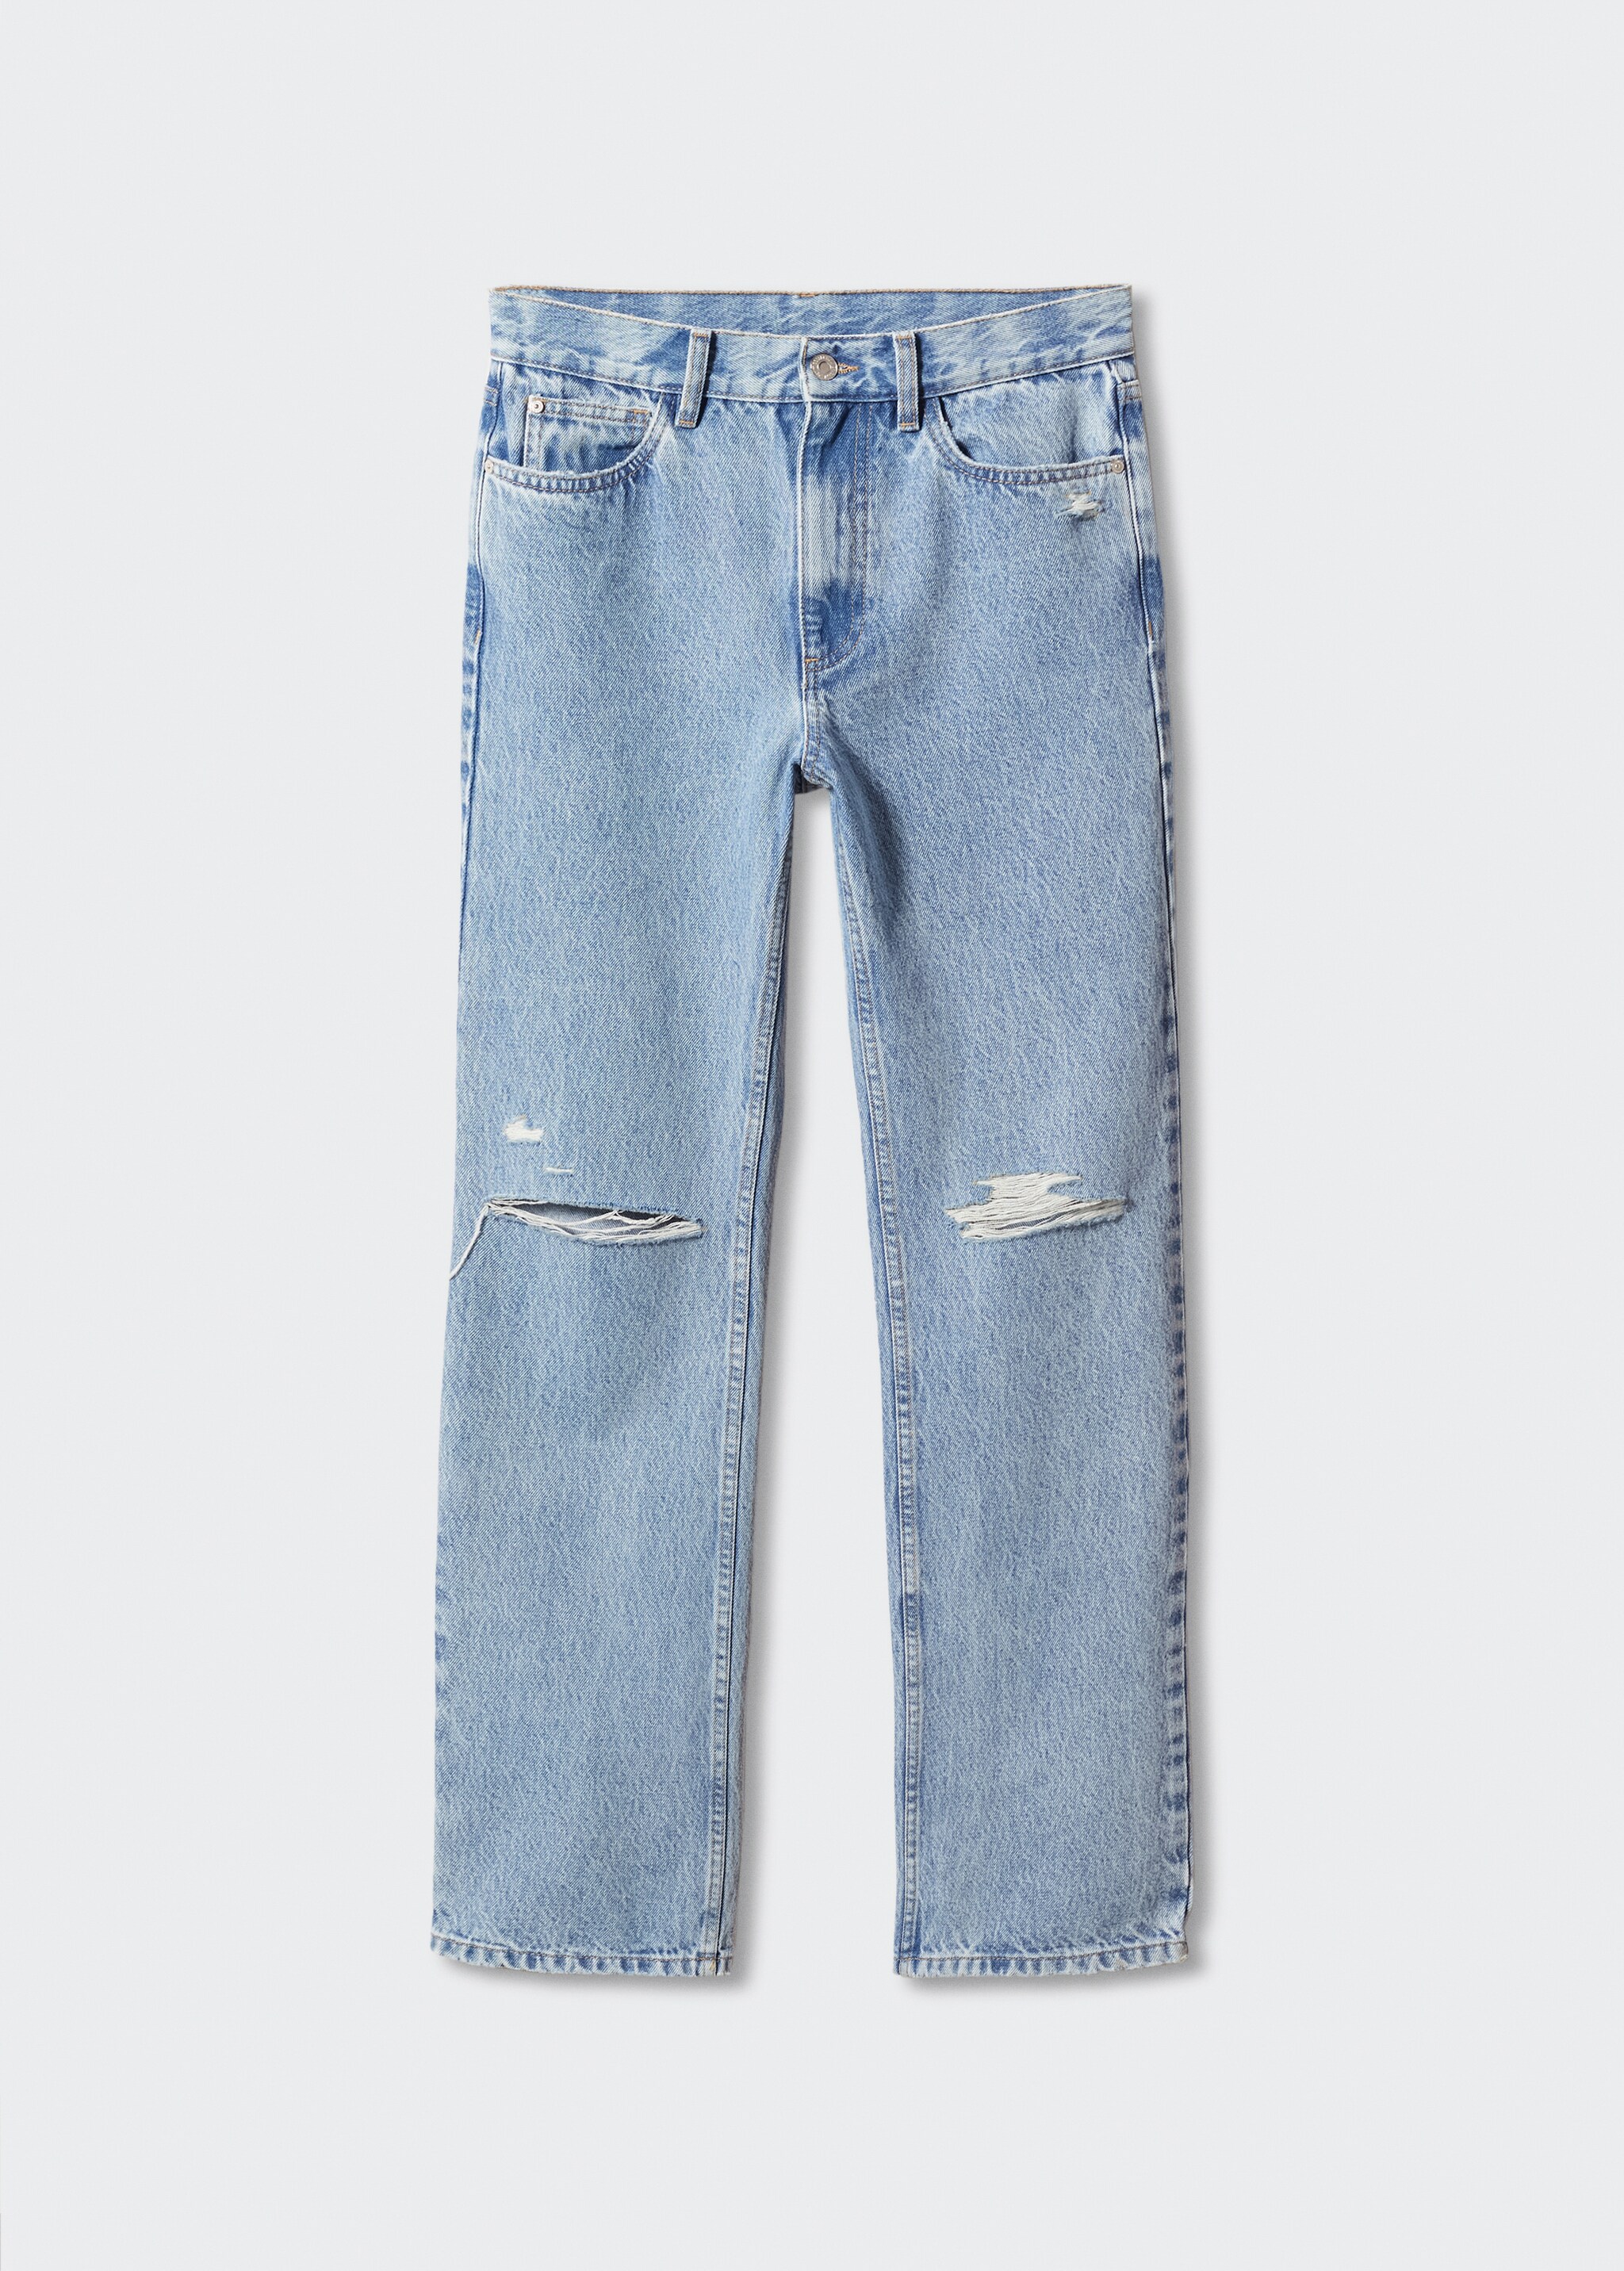 Jeans rectos rotos decorativos - Artículo sin modelo